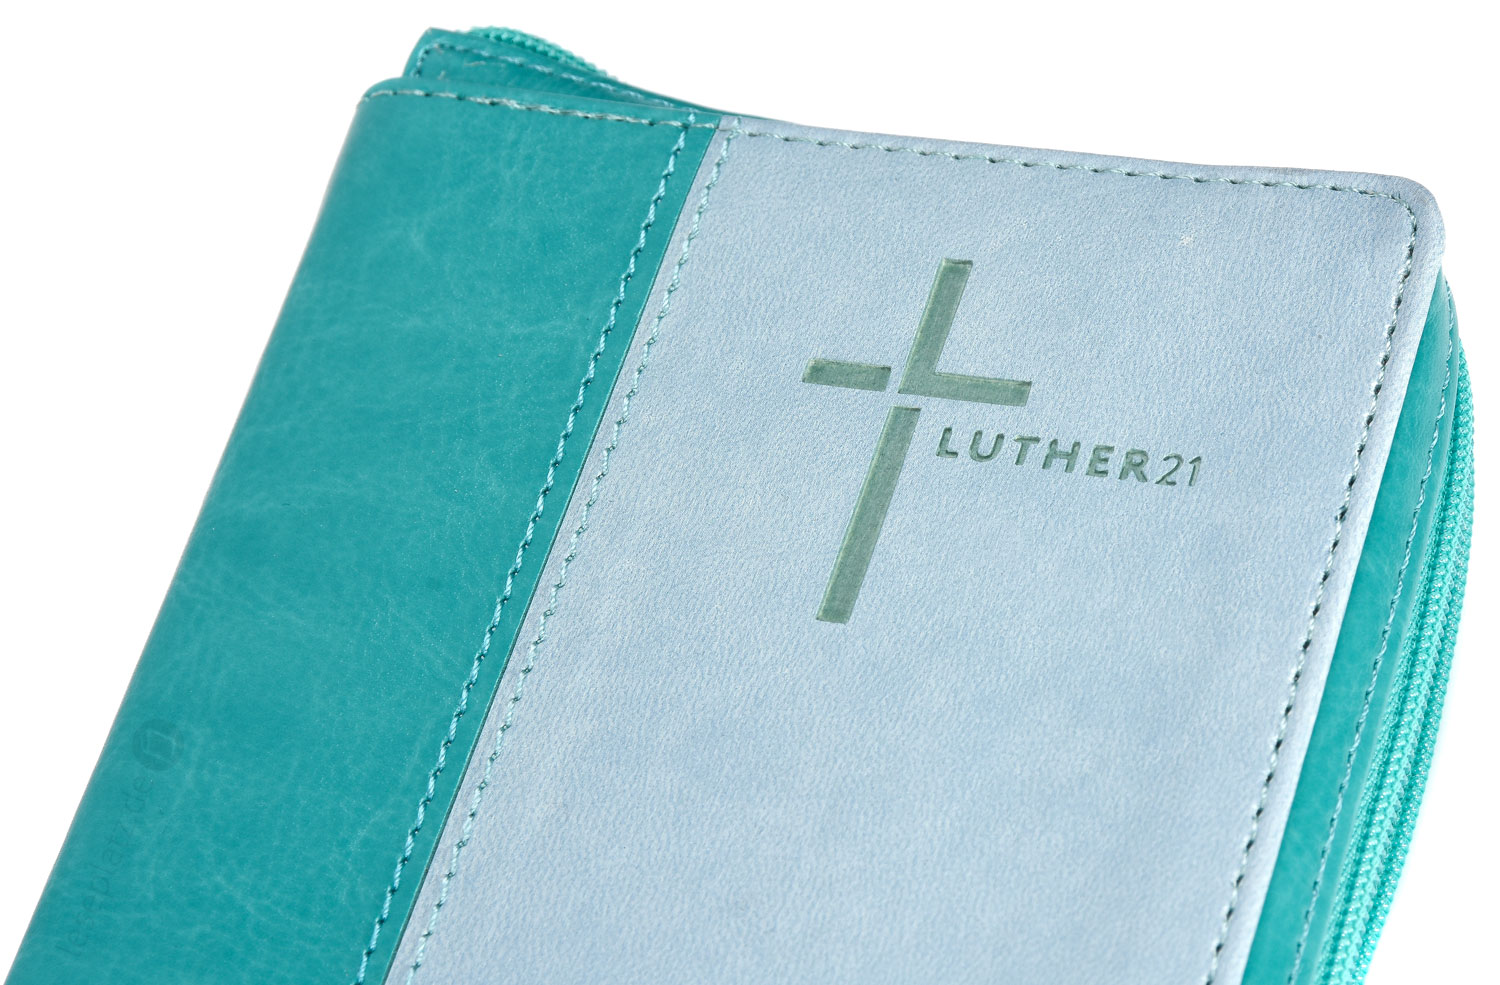 Luther21 - Taschenausgabe -  Kunstleder grün/helltürkis